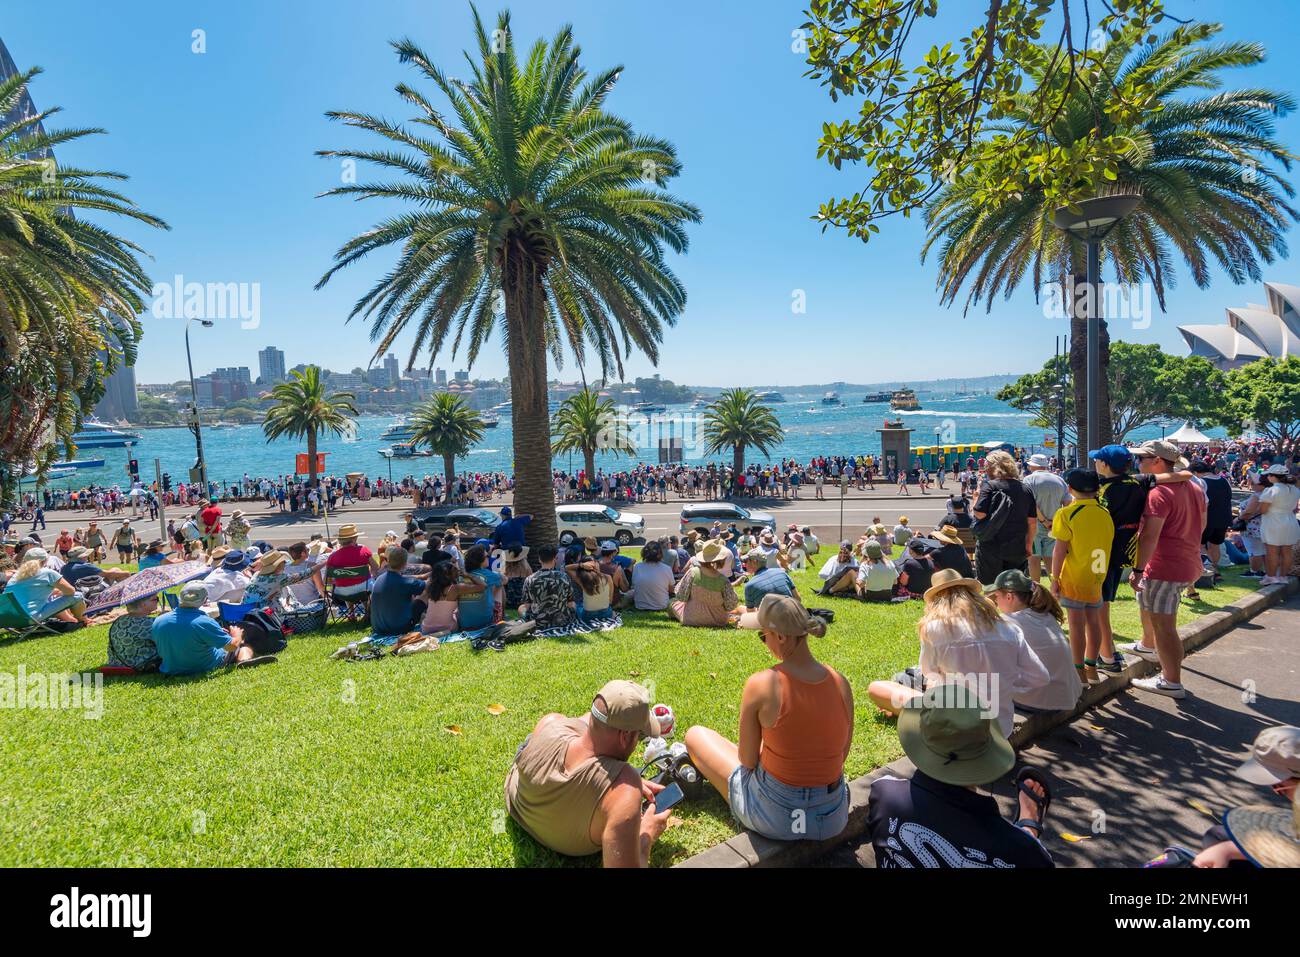 Des foules de personnes se sont rassemblées à Dawes point près de Circular Quay, en regardant les événements dans le port de Sydney pendant les célébrations de la fête de l'Australie à 26 janvier 2023 Banque D'Images